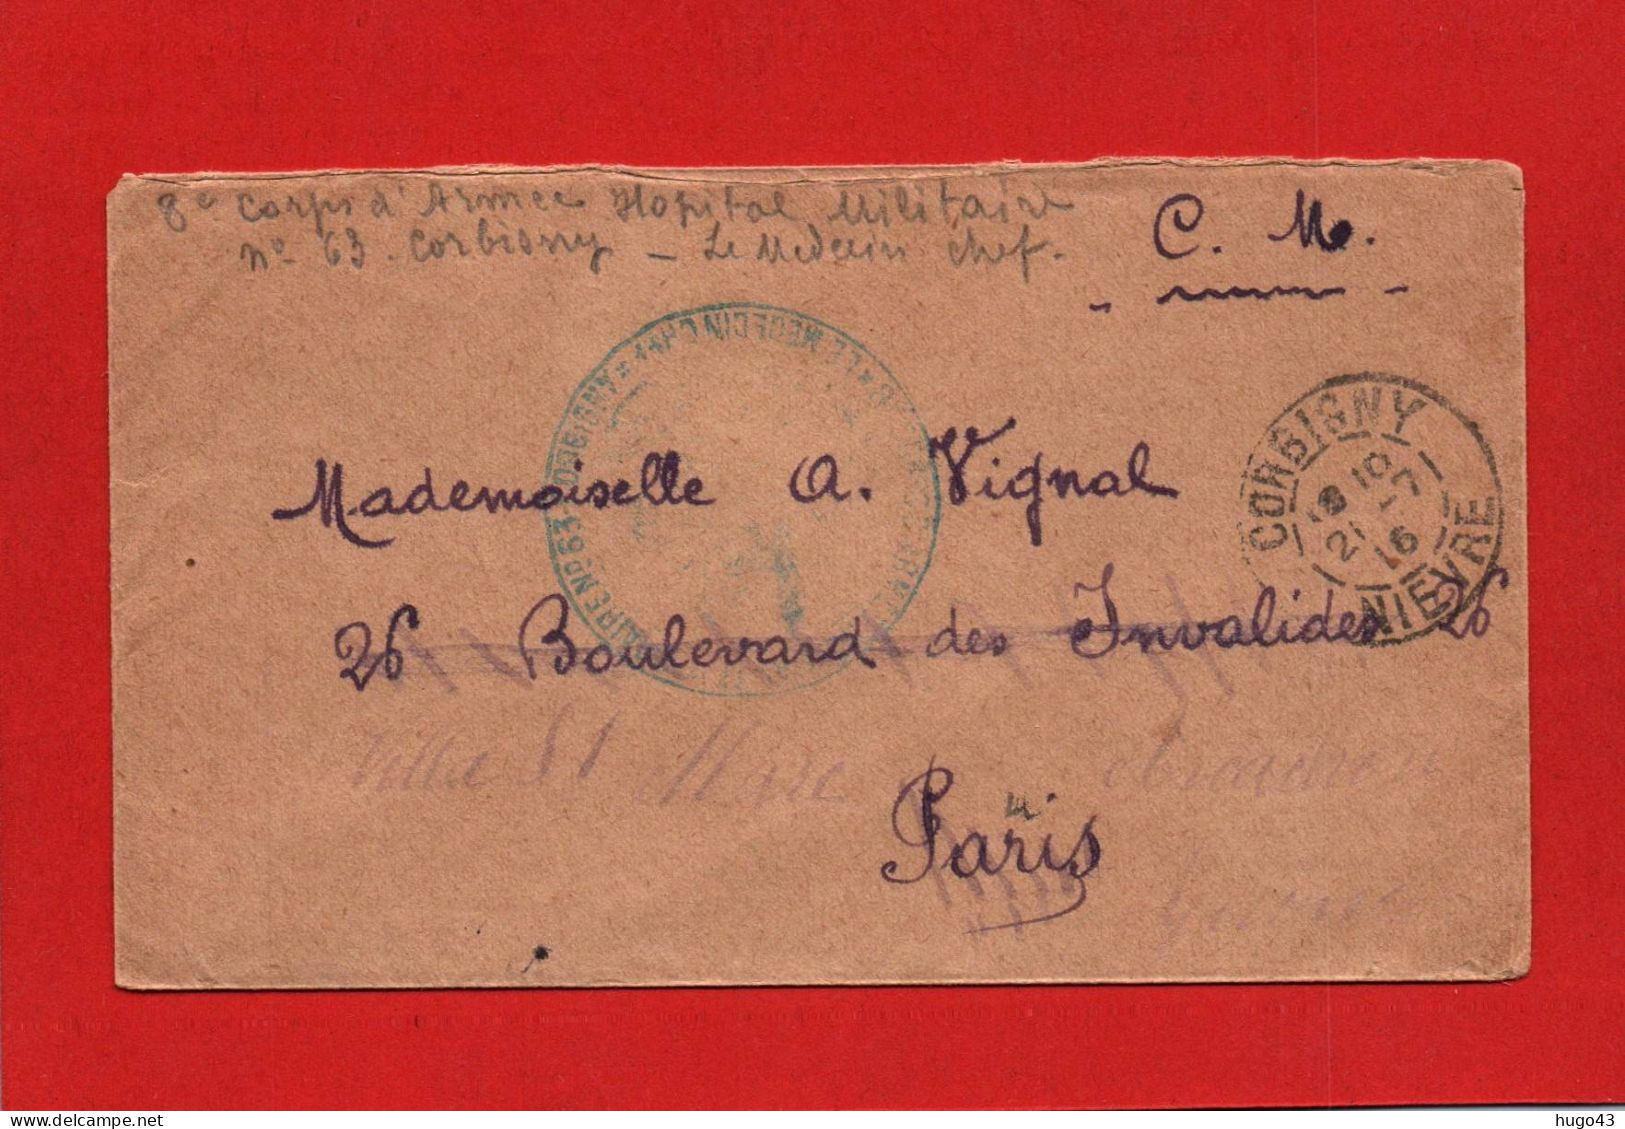 ENVELOPPE DU 21/7/1916 - CACHET HOPITAL MILITAIRE COMPLEMENTAIRE N° 63 - A CORBIGNY DANS LA NIEVRE - Covers & Documents